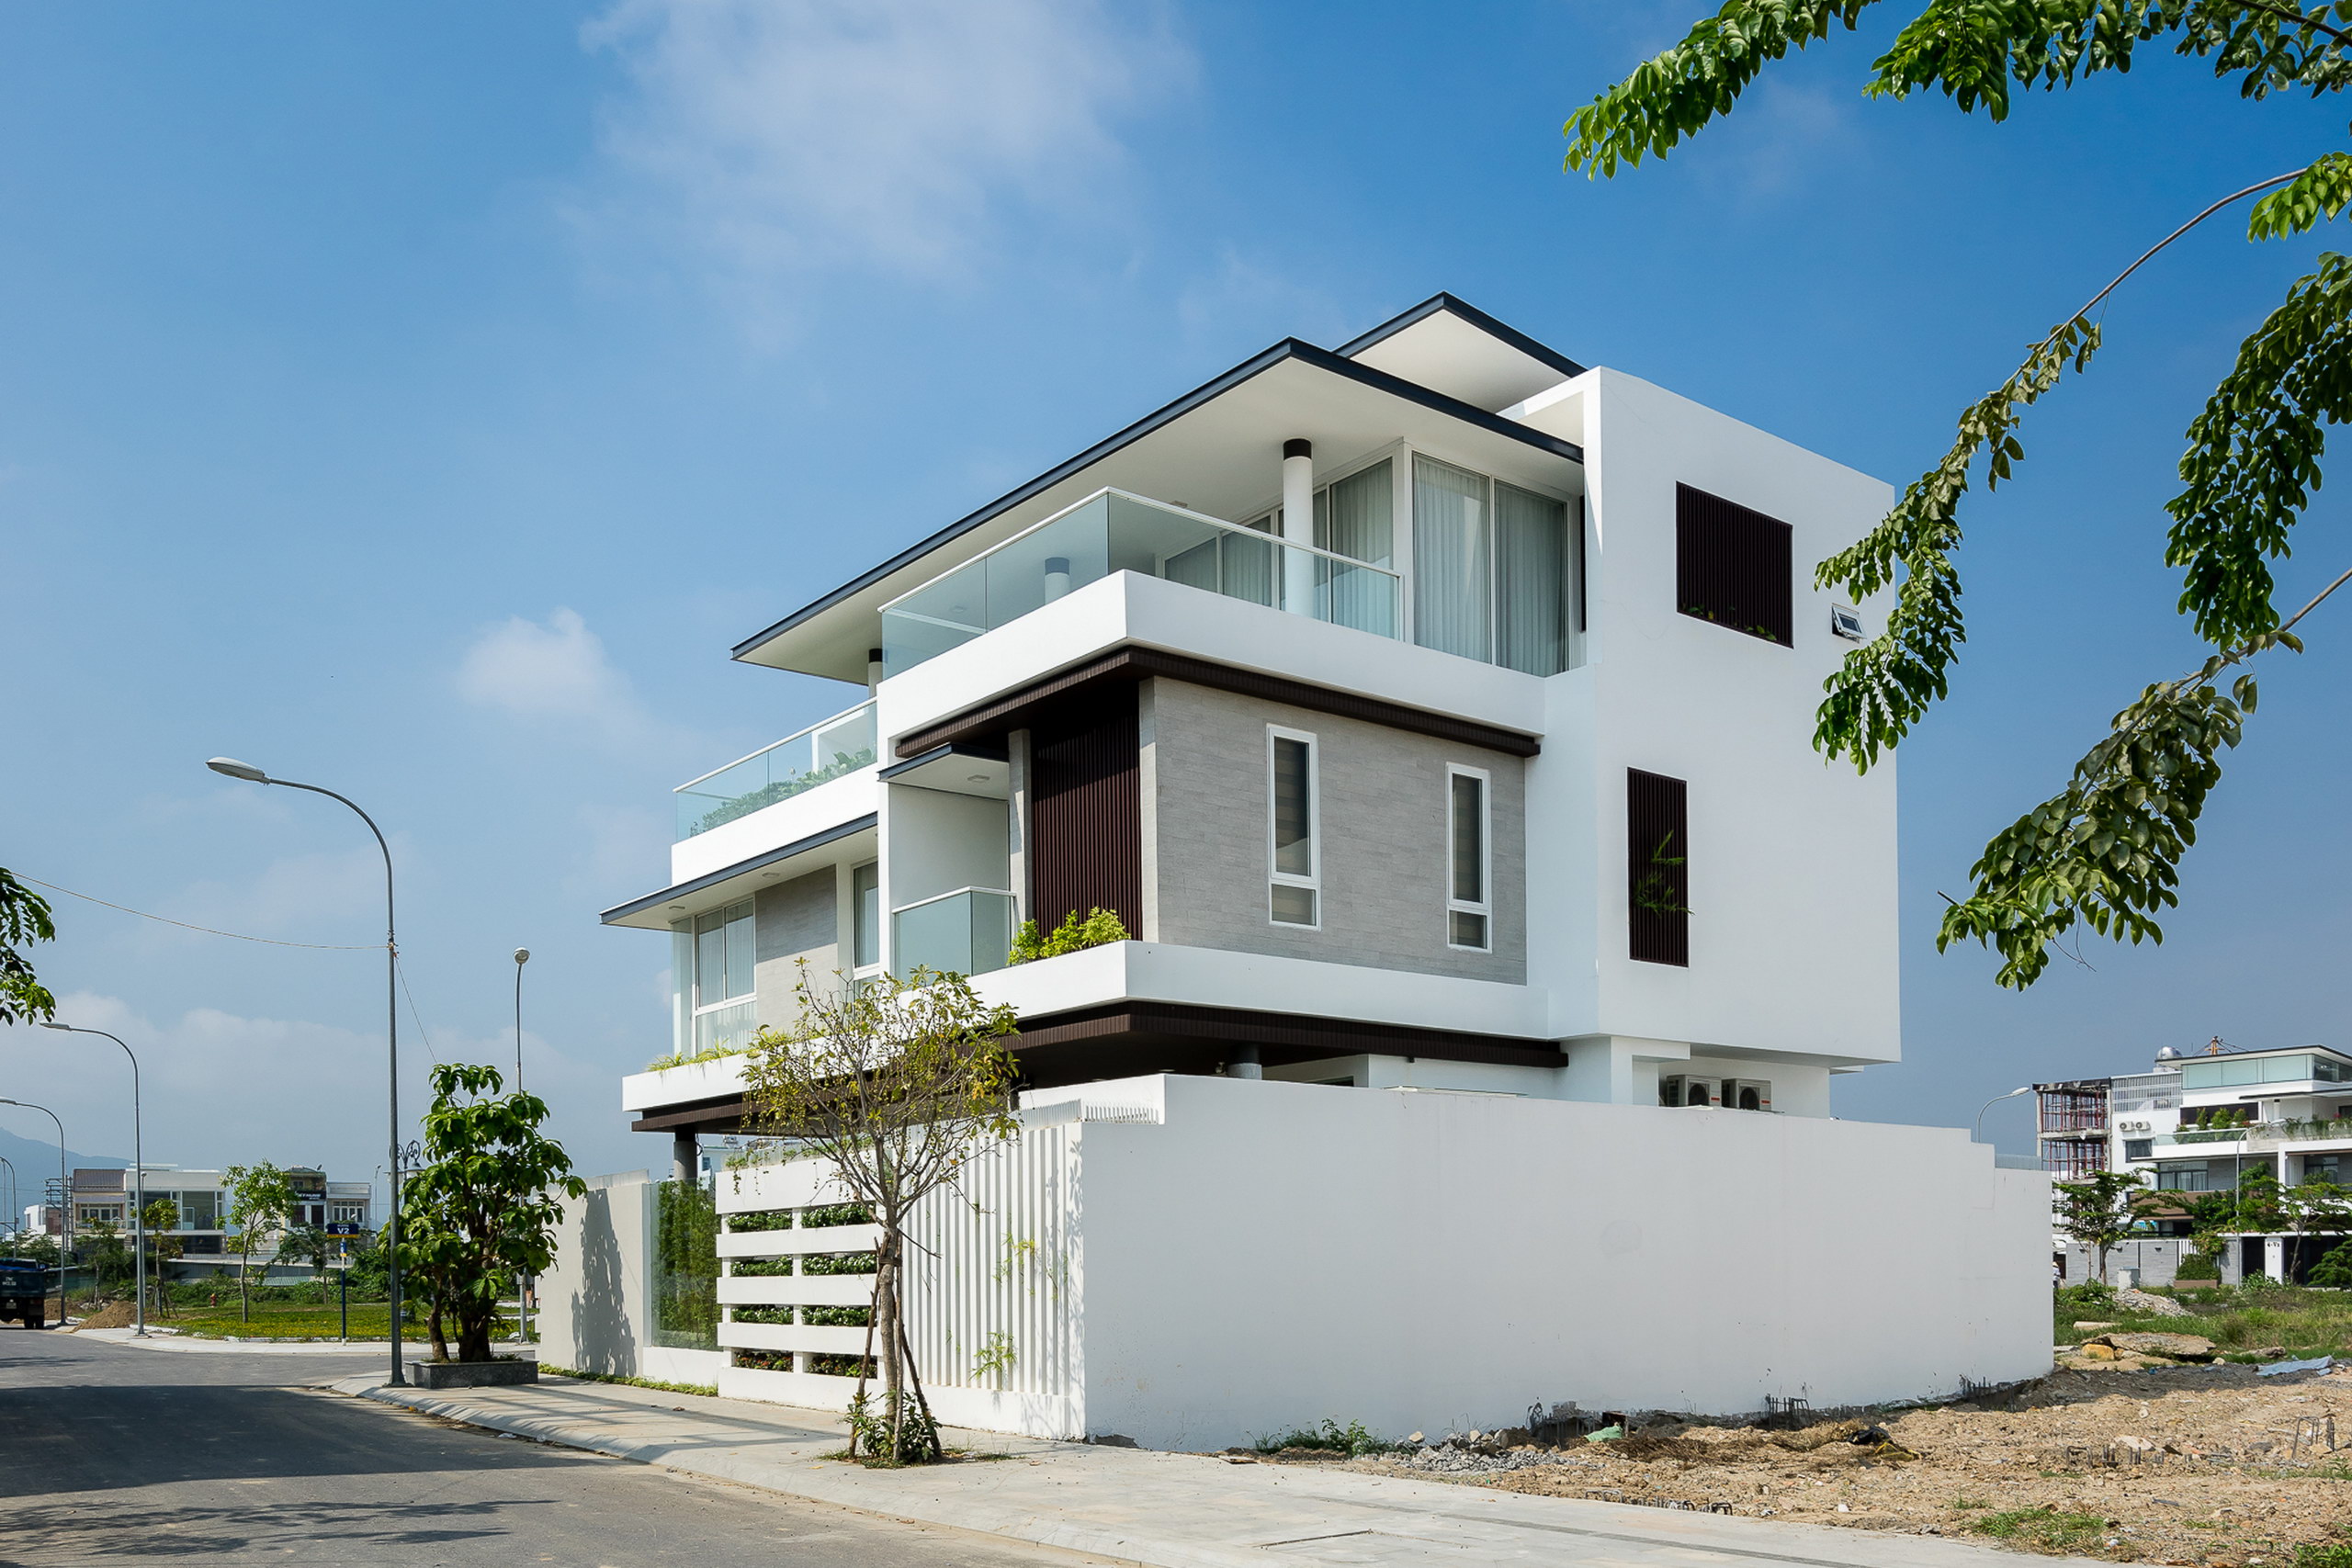 1d 3 - Biệt thự lô góc 3 tầng kiến trúc hiện đại - Công trình được thiết kế tại TP biển Nha Trang